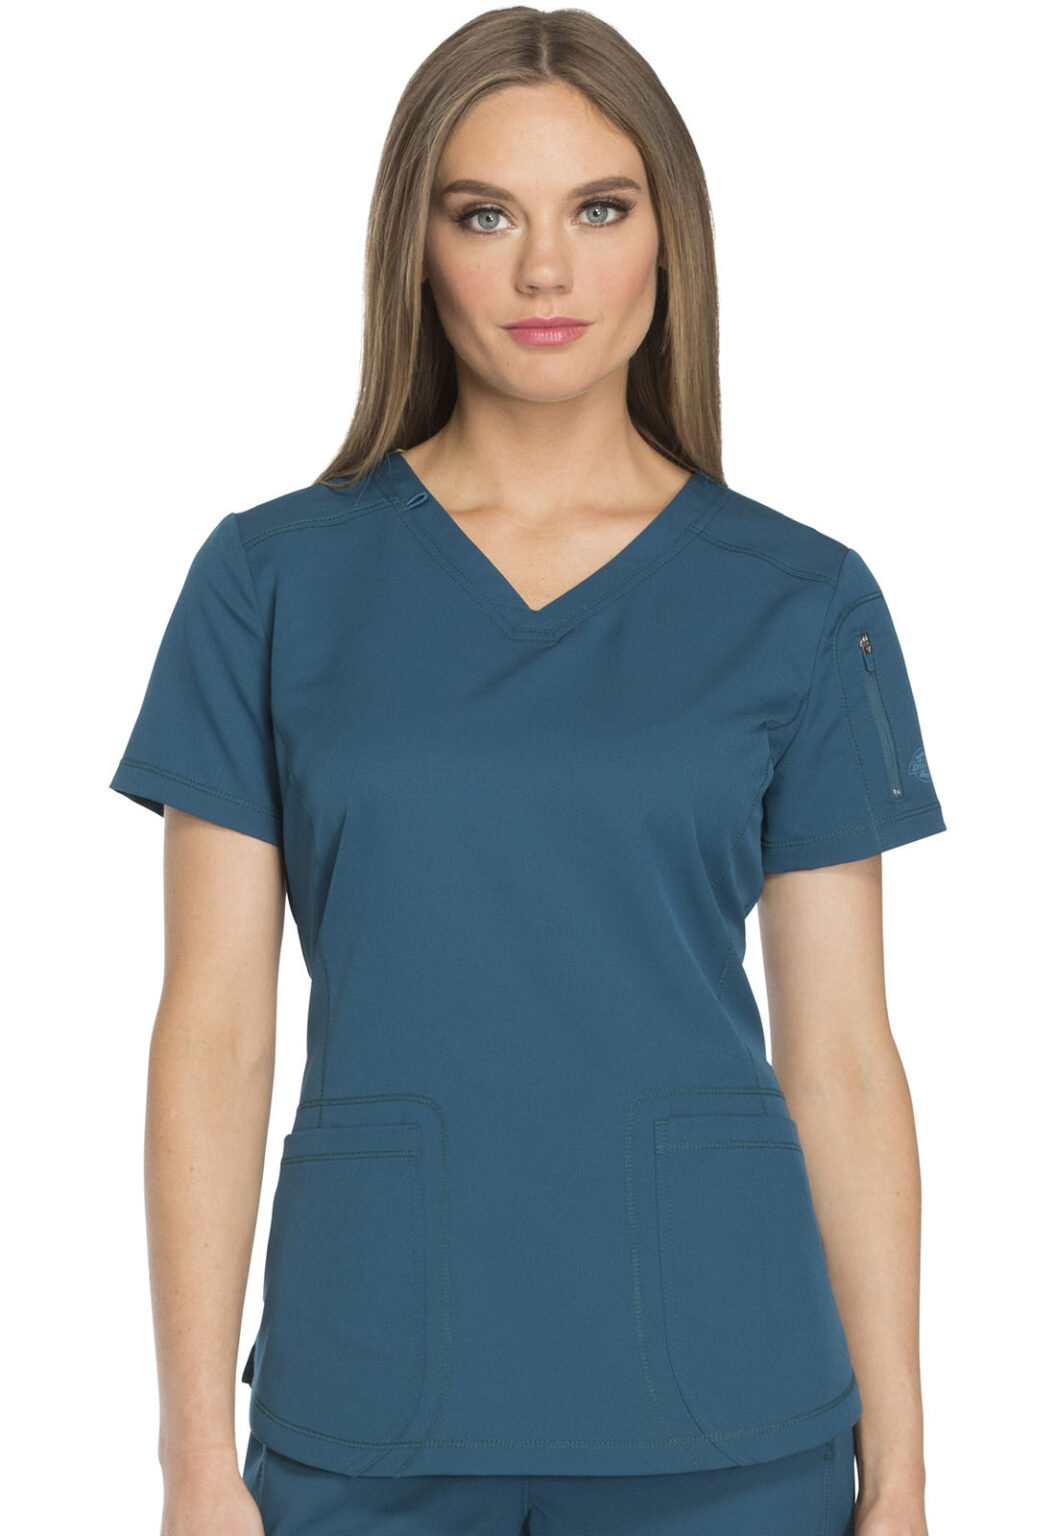 blusa del uniforme médico mujer unicolor dickies balance dk940 roy 2023